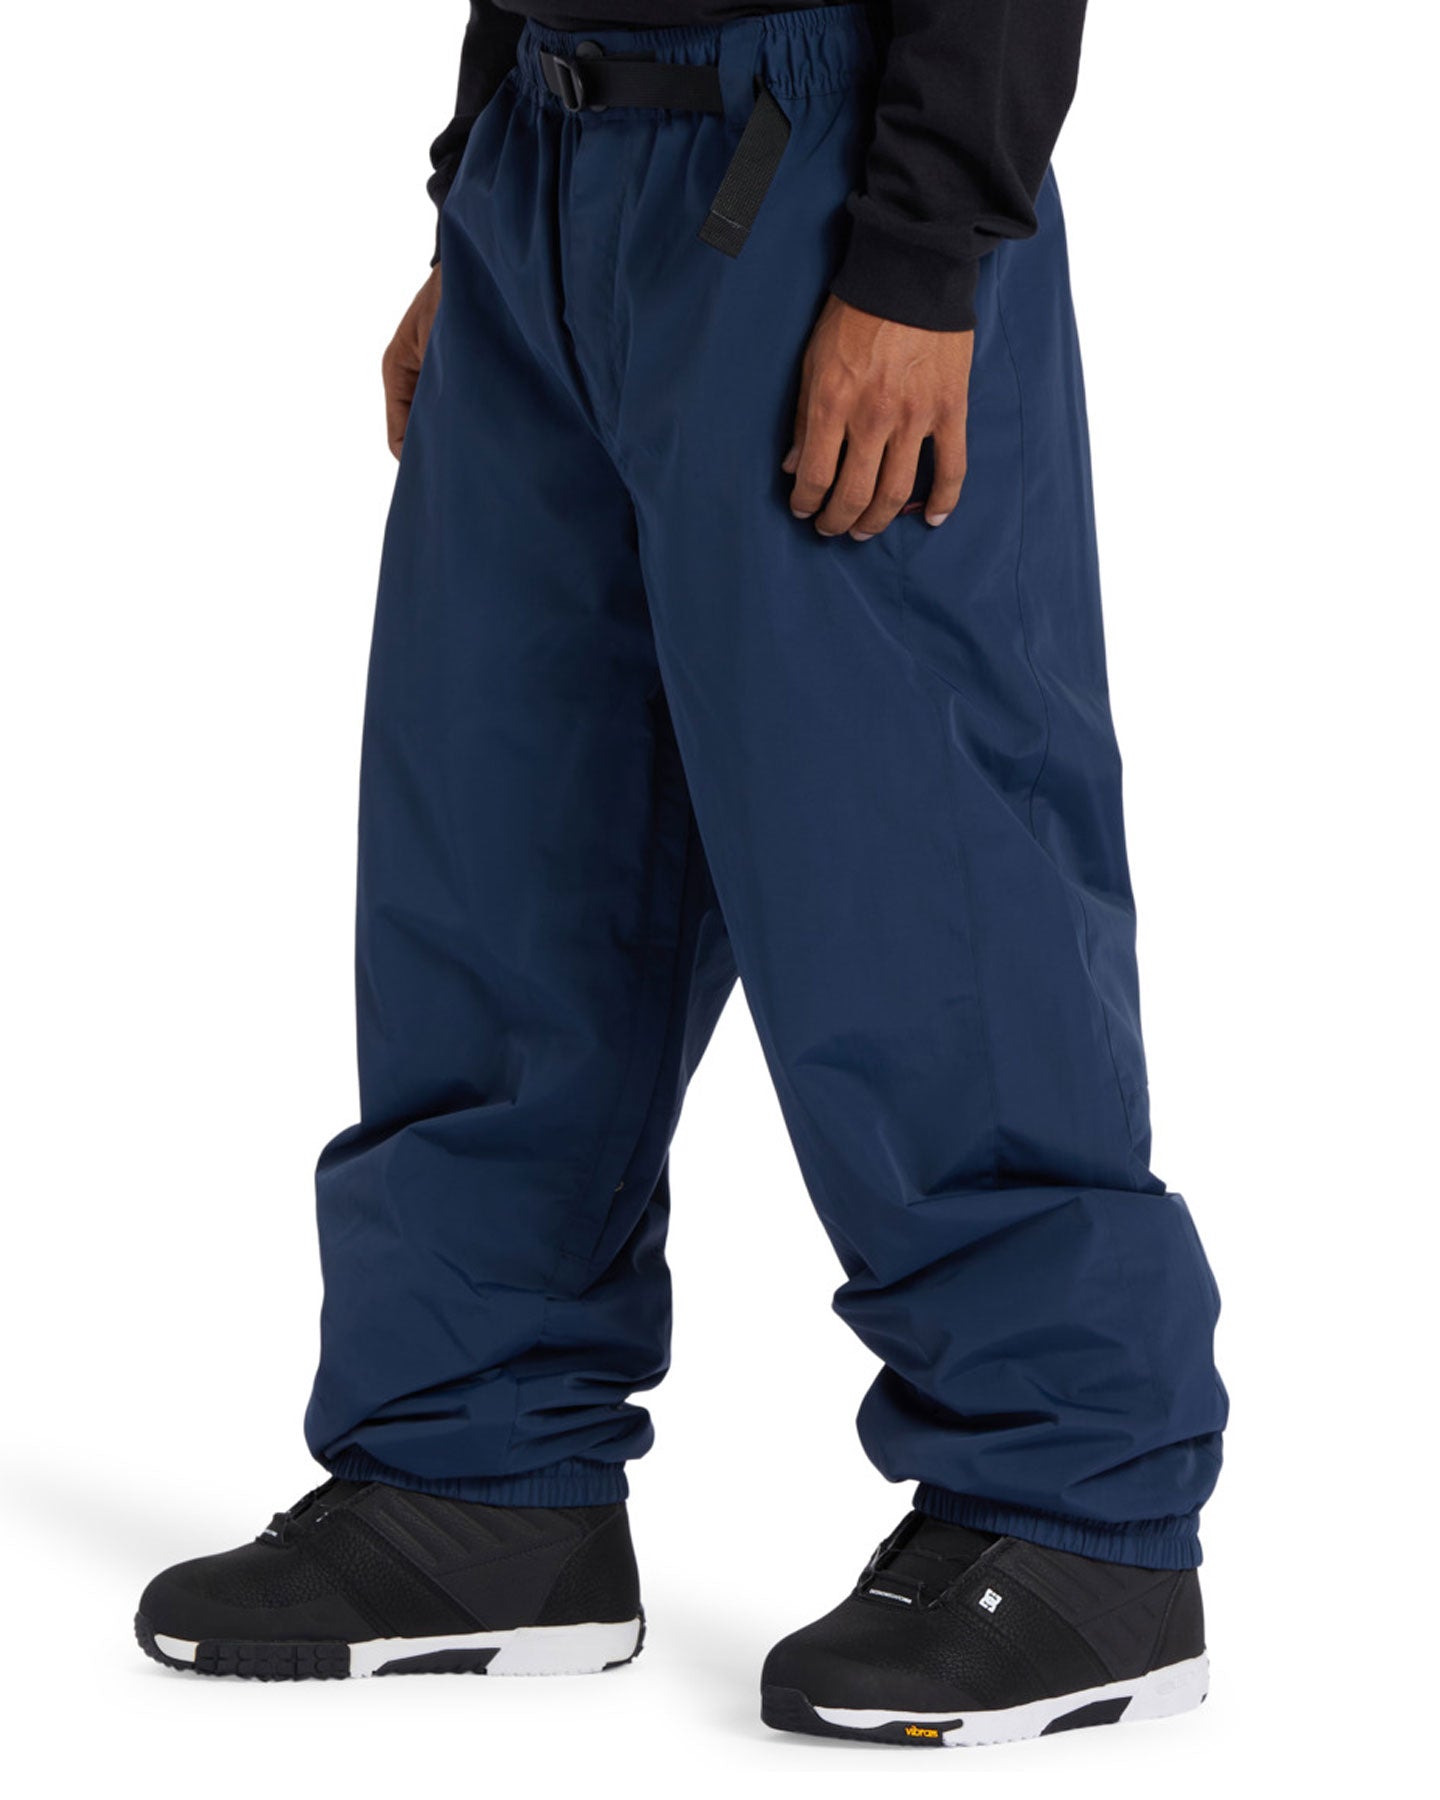 DC Primo Technical Snow Pants - Dress Blues Men's Snow Pants - SnowSkiersWarehouse